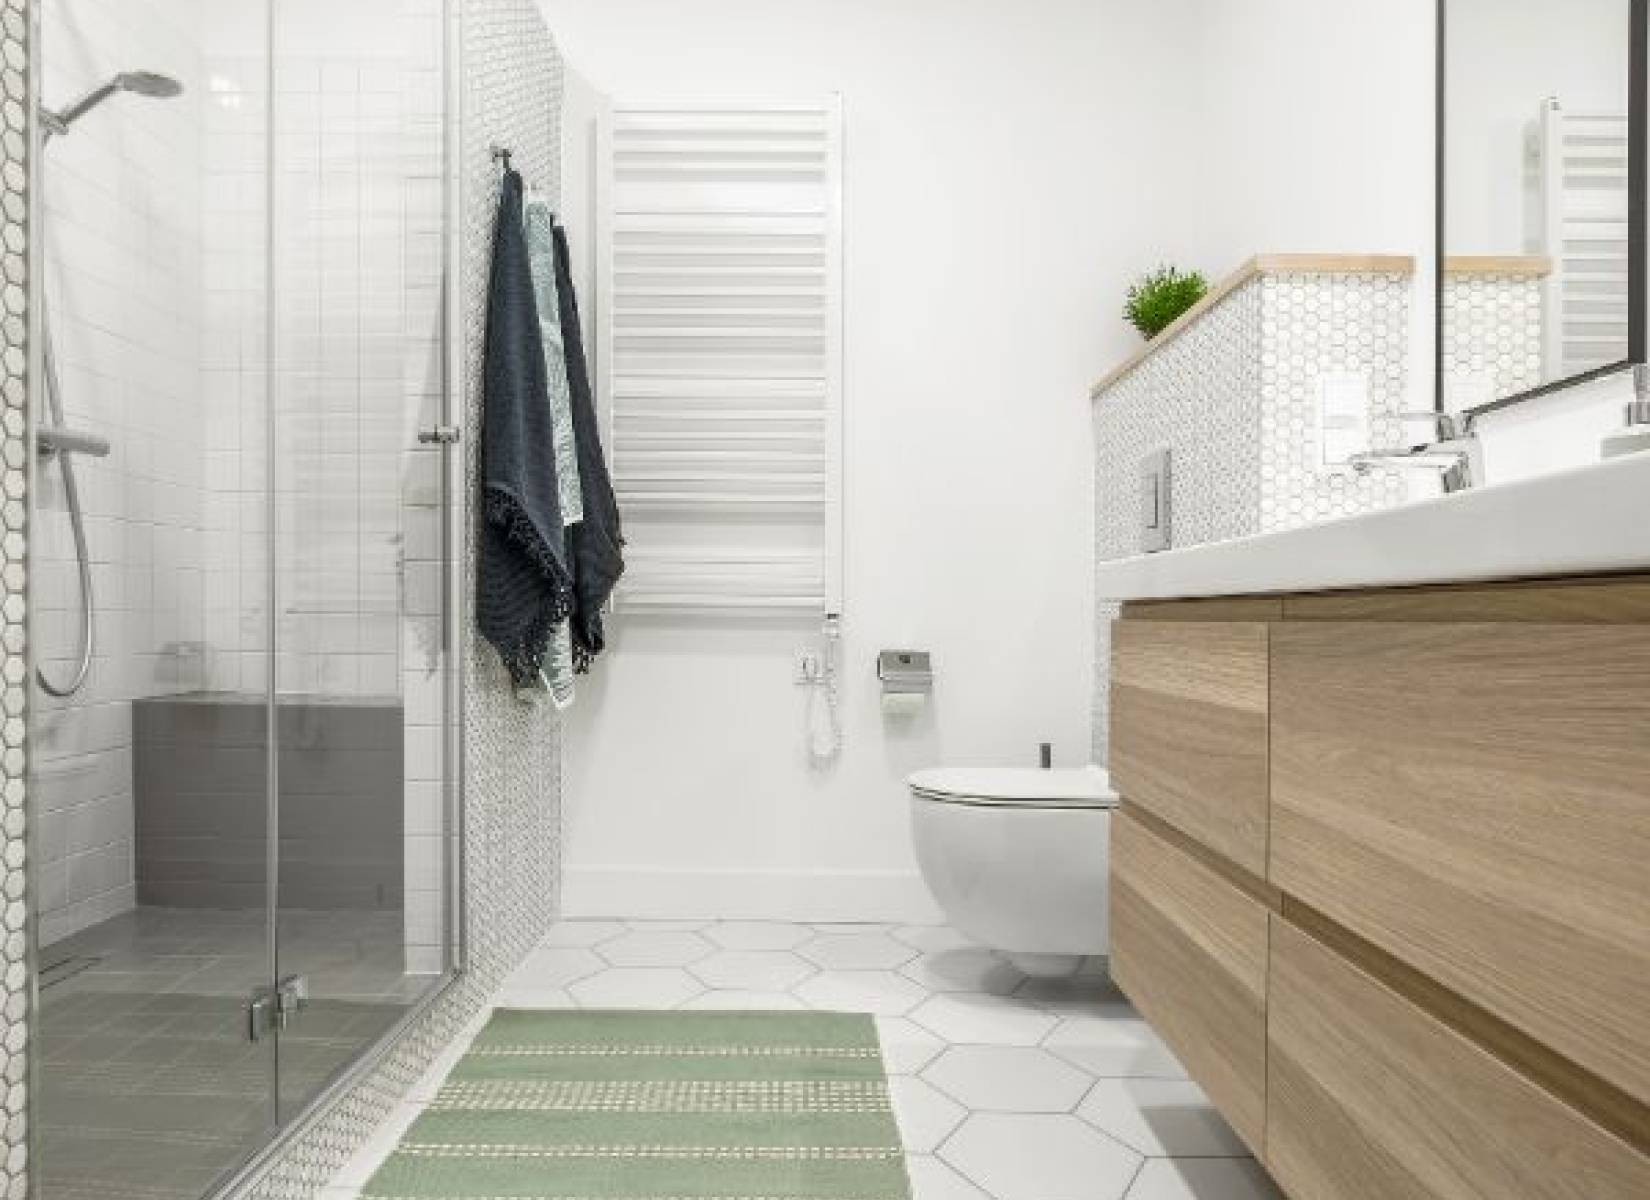 Stelaż WC - Innowacyjne rozwiązanie, które odmieni Twoją łazienkę!